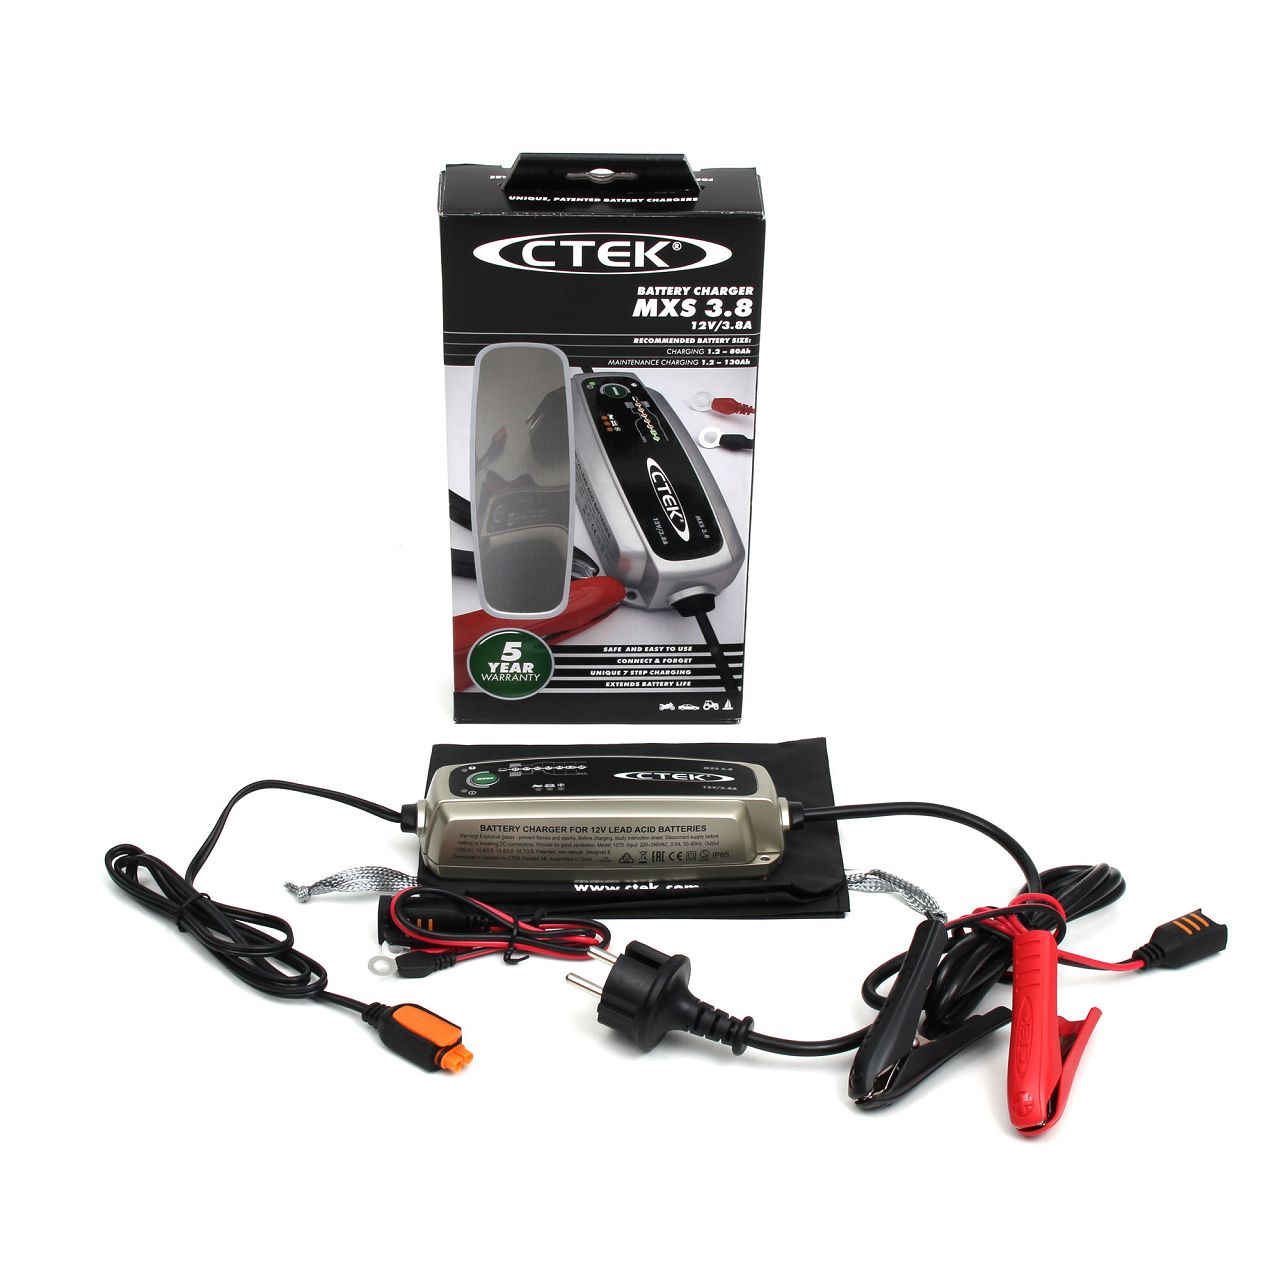 CTEK MXS 3.8 Batterieladegerät Ladegerät Ladeerhaltungssystem